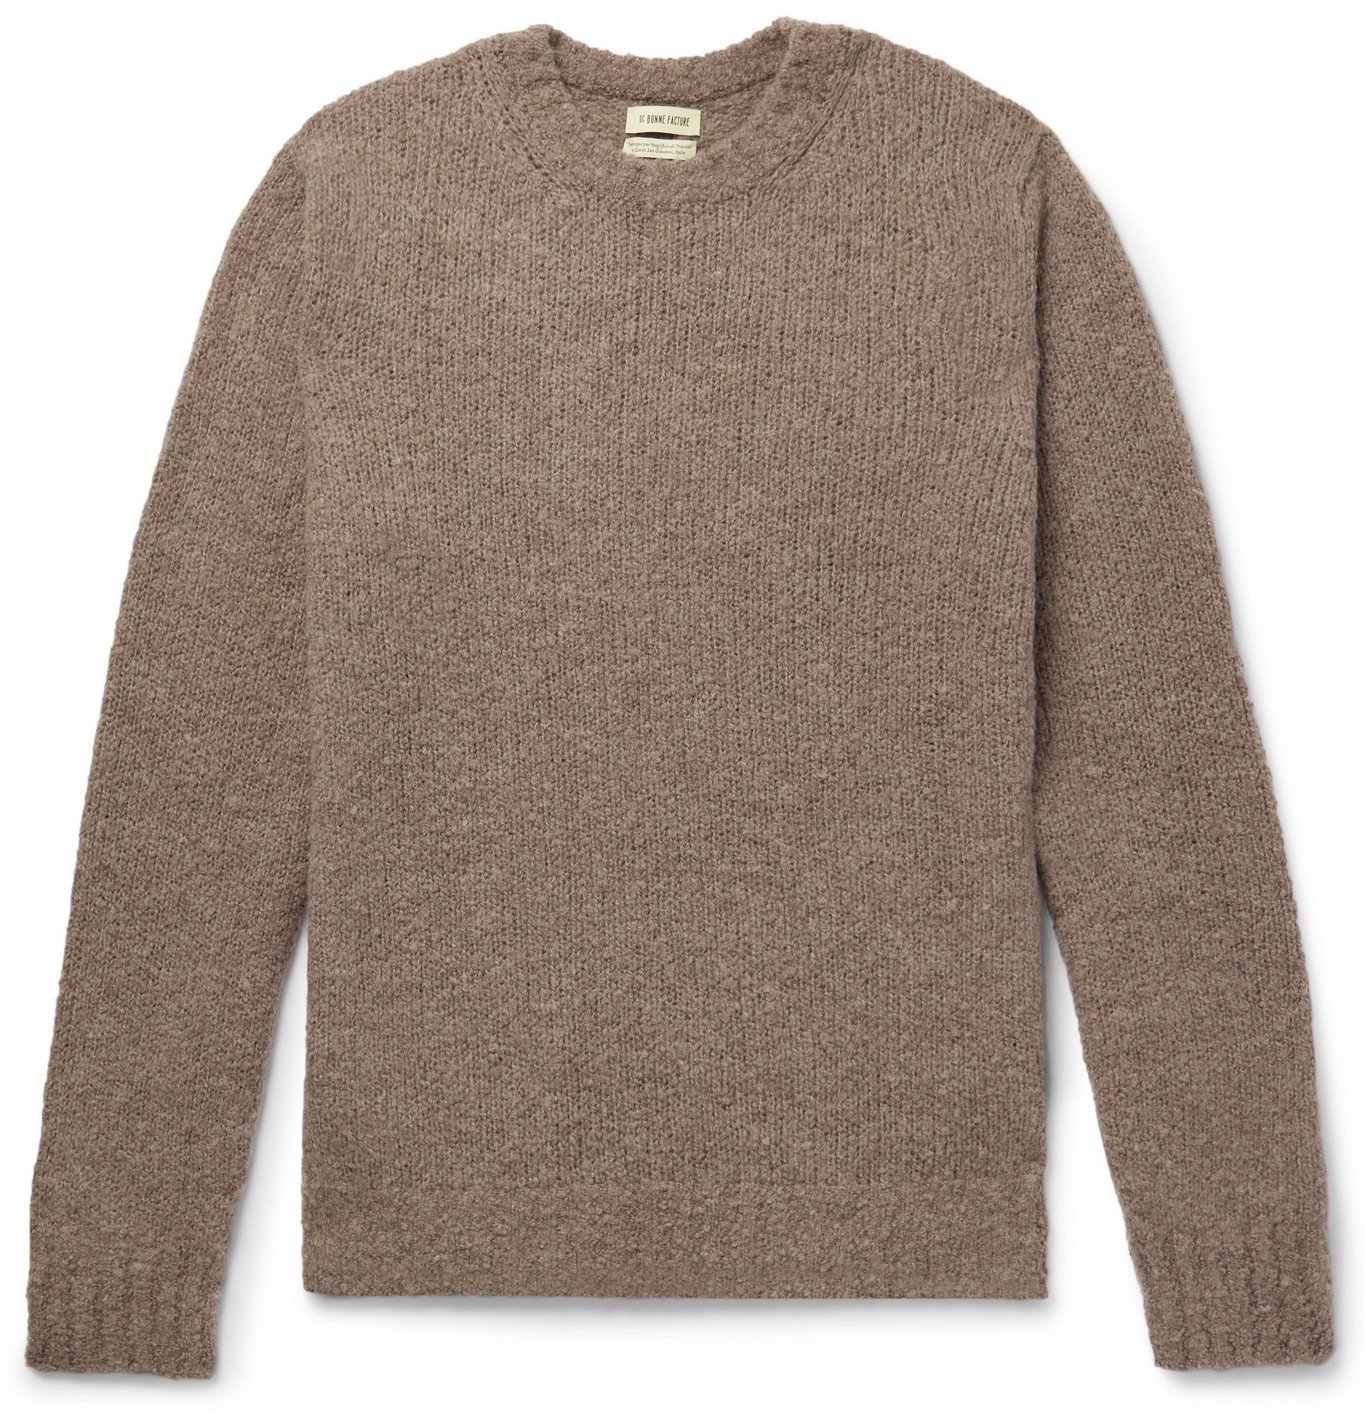 De Bonne Facture - Pecora Nera Wool Sweater - Neutrals De Bonne Facture